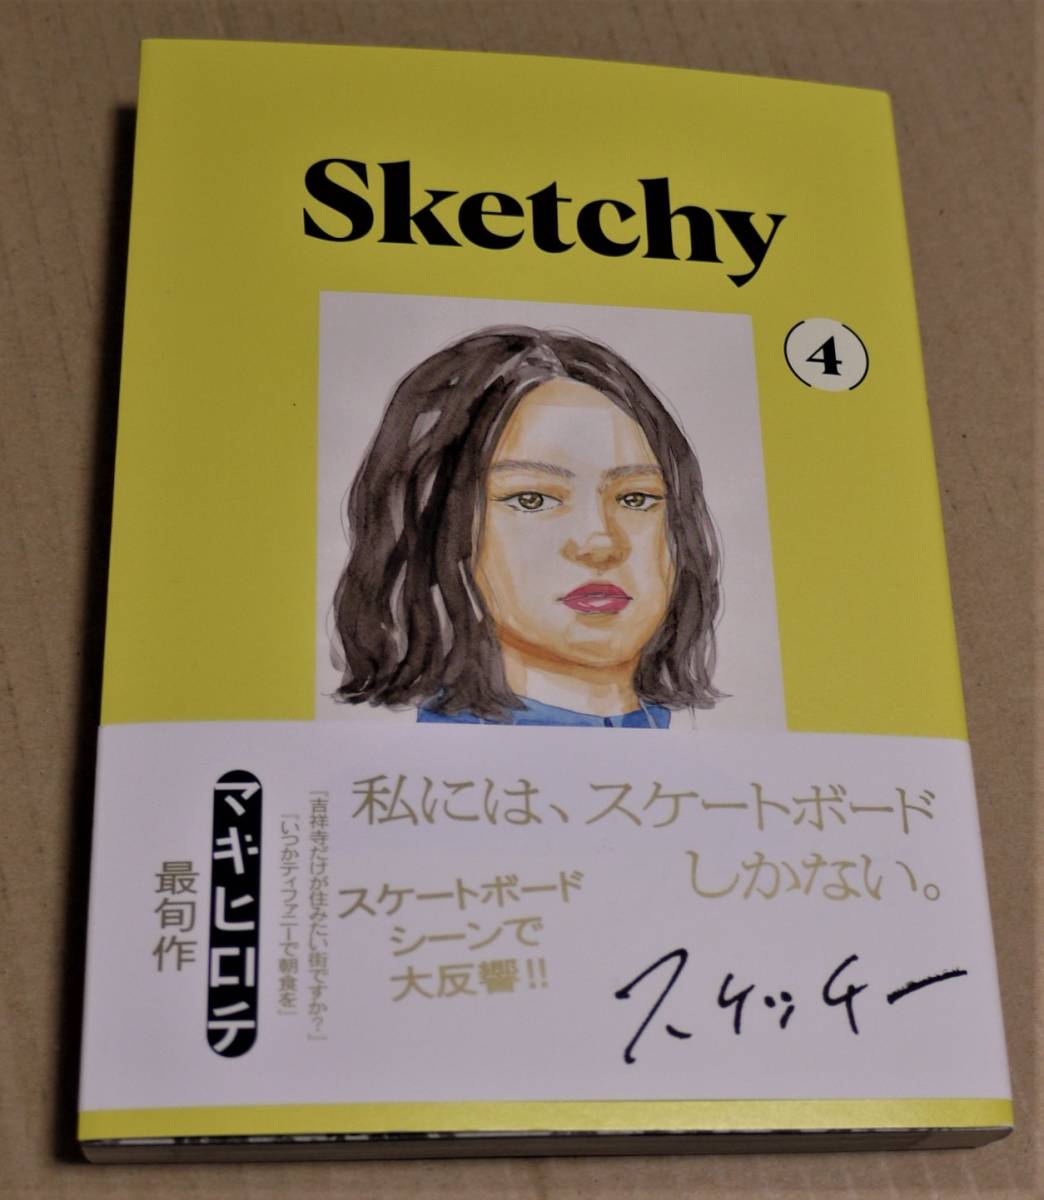 手绘插图和亲笔签名 Sketchy 第 4 卷(Makihirochi)Clickpost 含运费, 漫画, 动漫周边, 符号, 手绘绘画